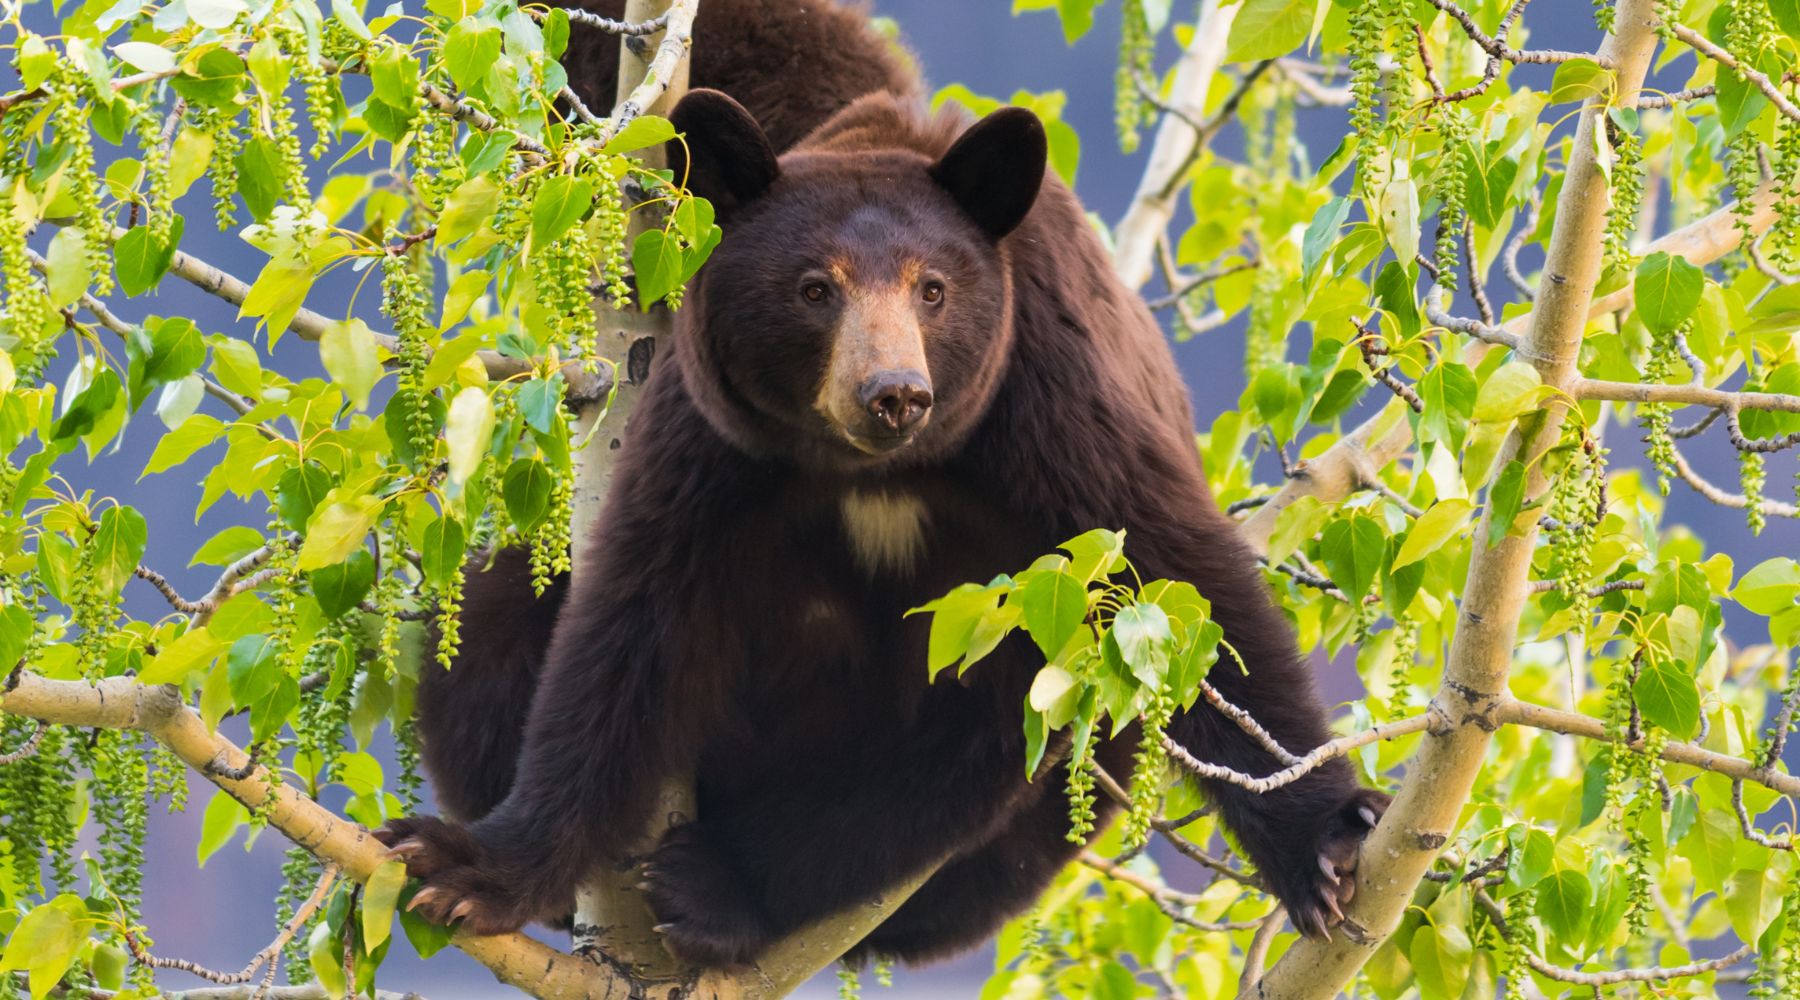 Black bears in a tree